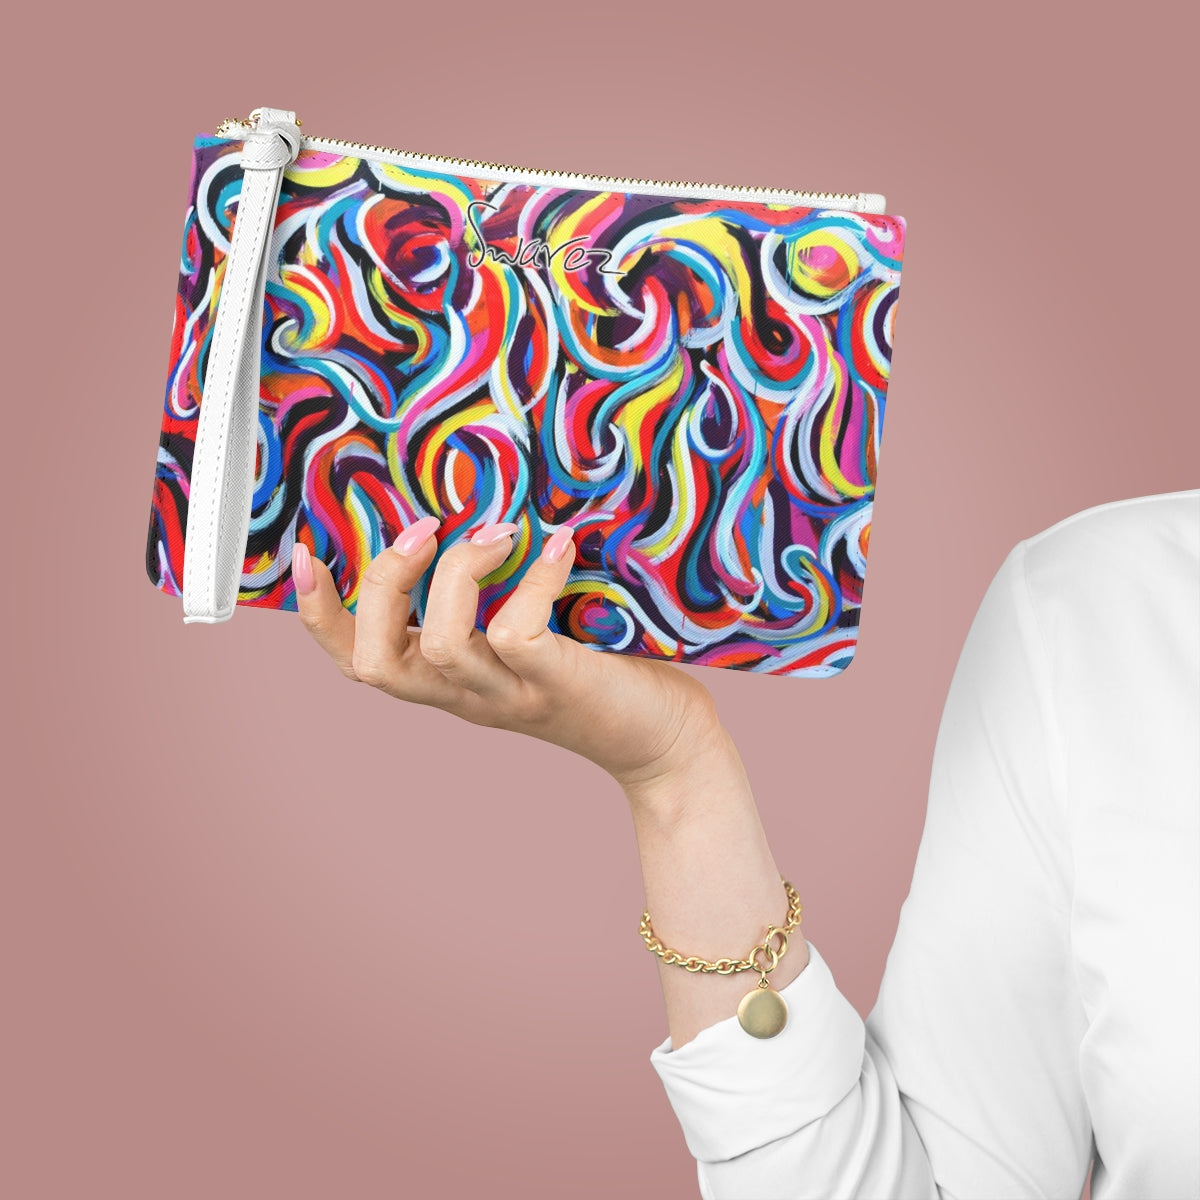 Clutch-Tasche – mehrfarbiges Wirbeldesign 